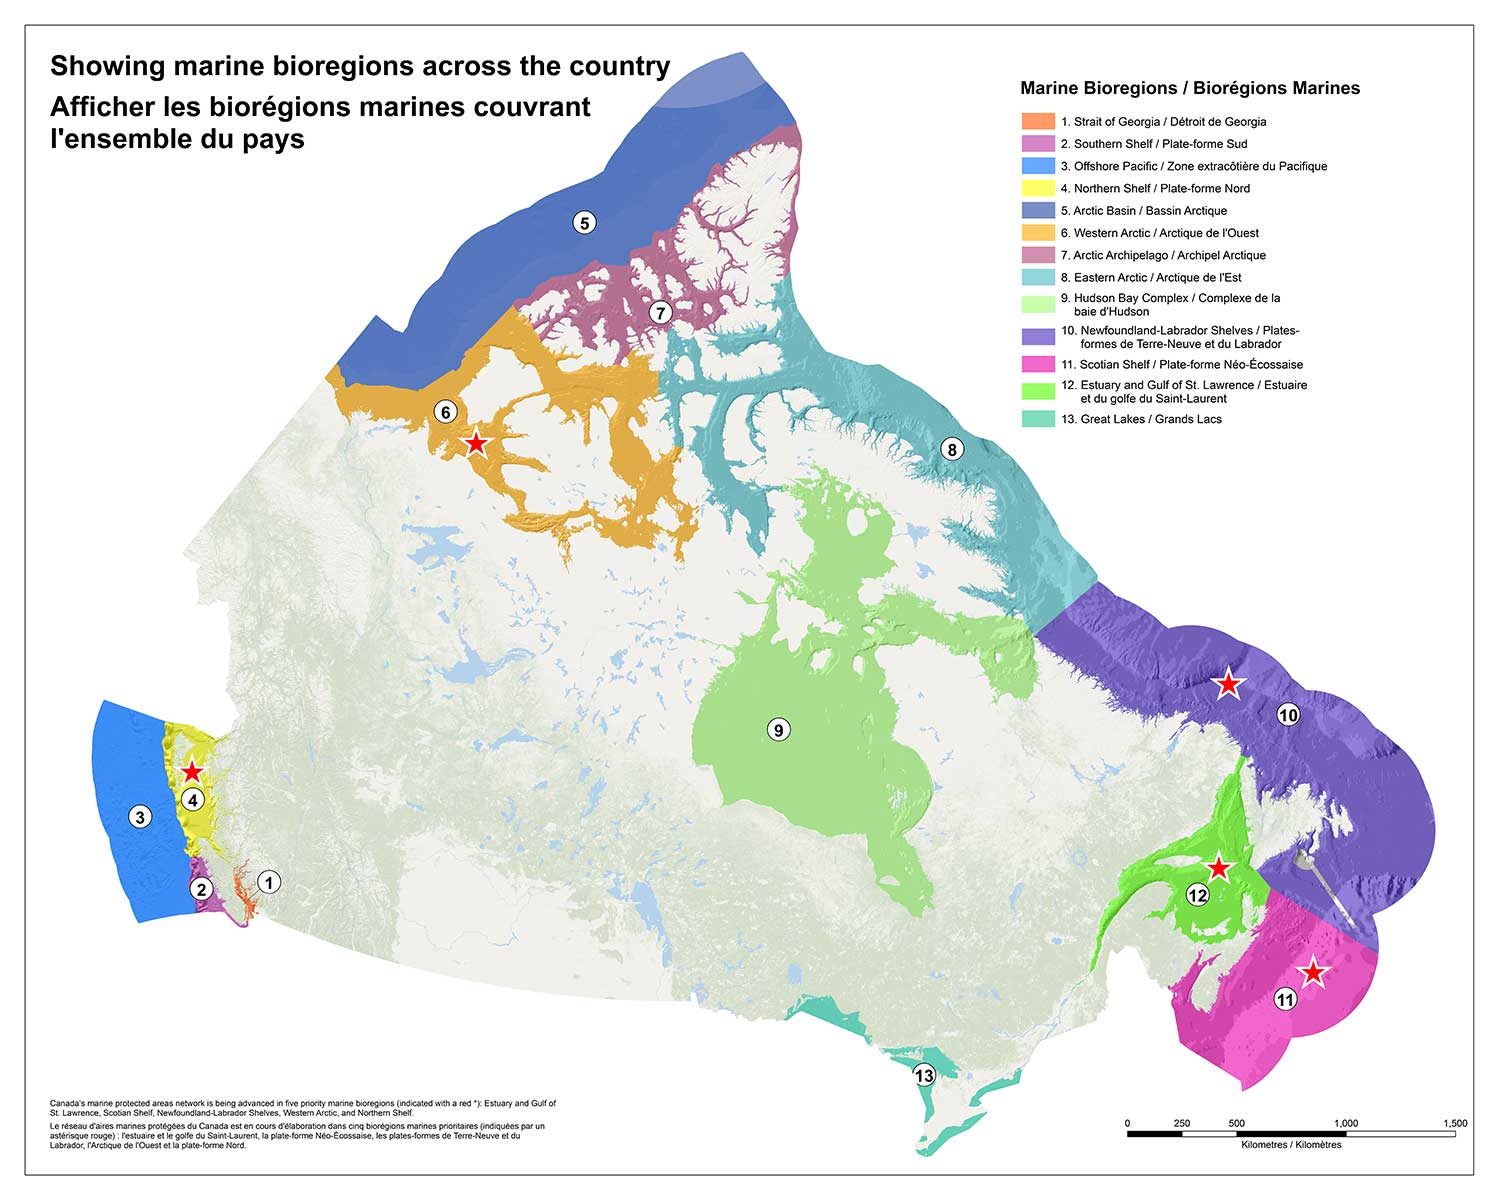 Le réseau d'aires marines protégées du Canada est en cours d'élaboration dans cinq biorégions marines prioritaires (indiquées par un astérique rouge) : l'estuaire et golfe du Saint-Laurent, la plate-forme Néo-Écossaise, les plates-formes de Terre-Neuve et du Labrador, l'Arctique de l'Ouest, et la plate-forme Nord.